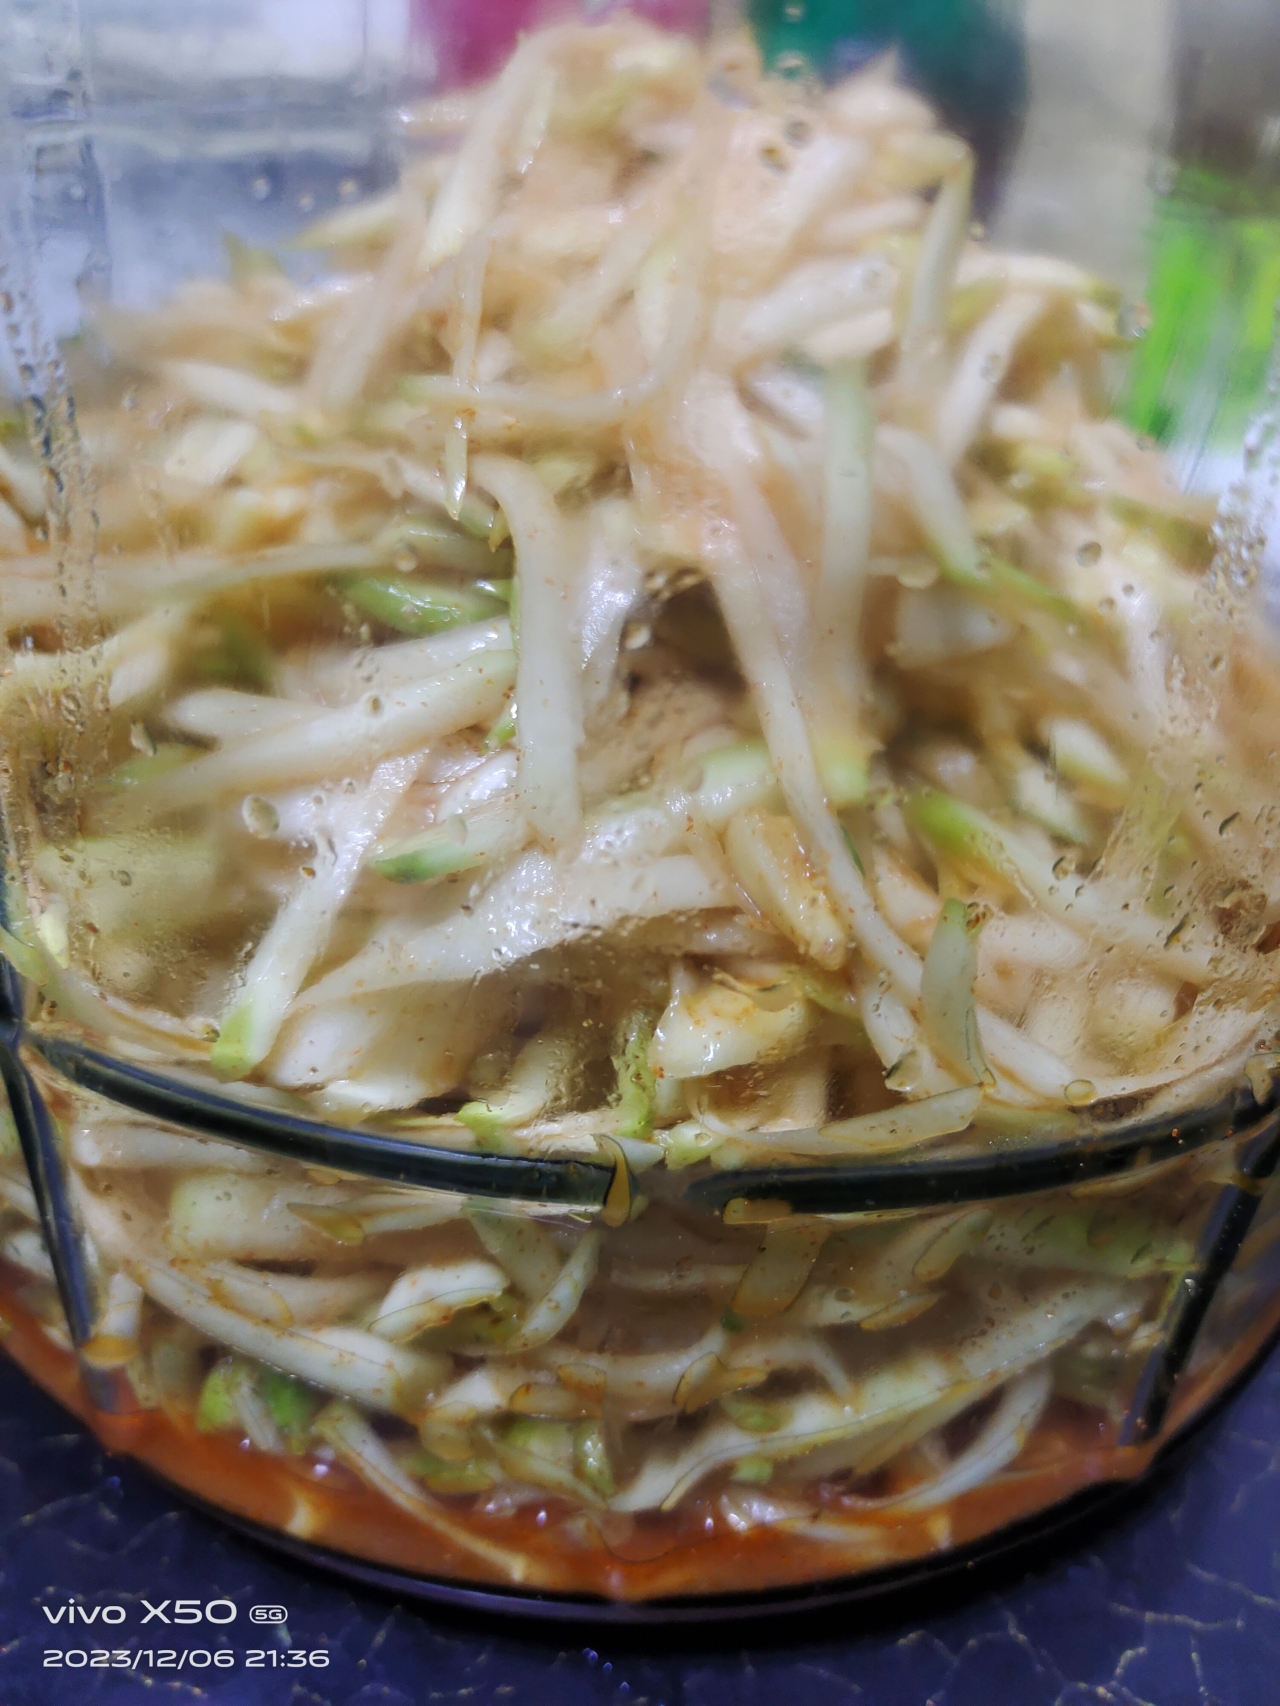 腌芥菜疙瘩（憋辣菜丝）—刺激好吃的小咸菜